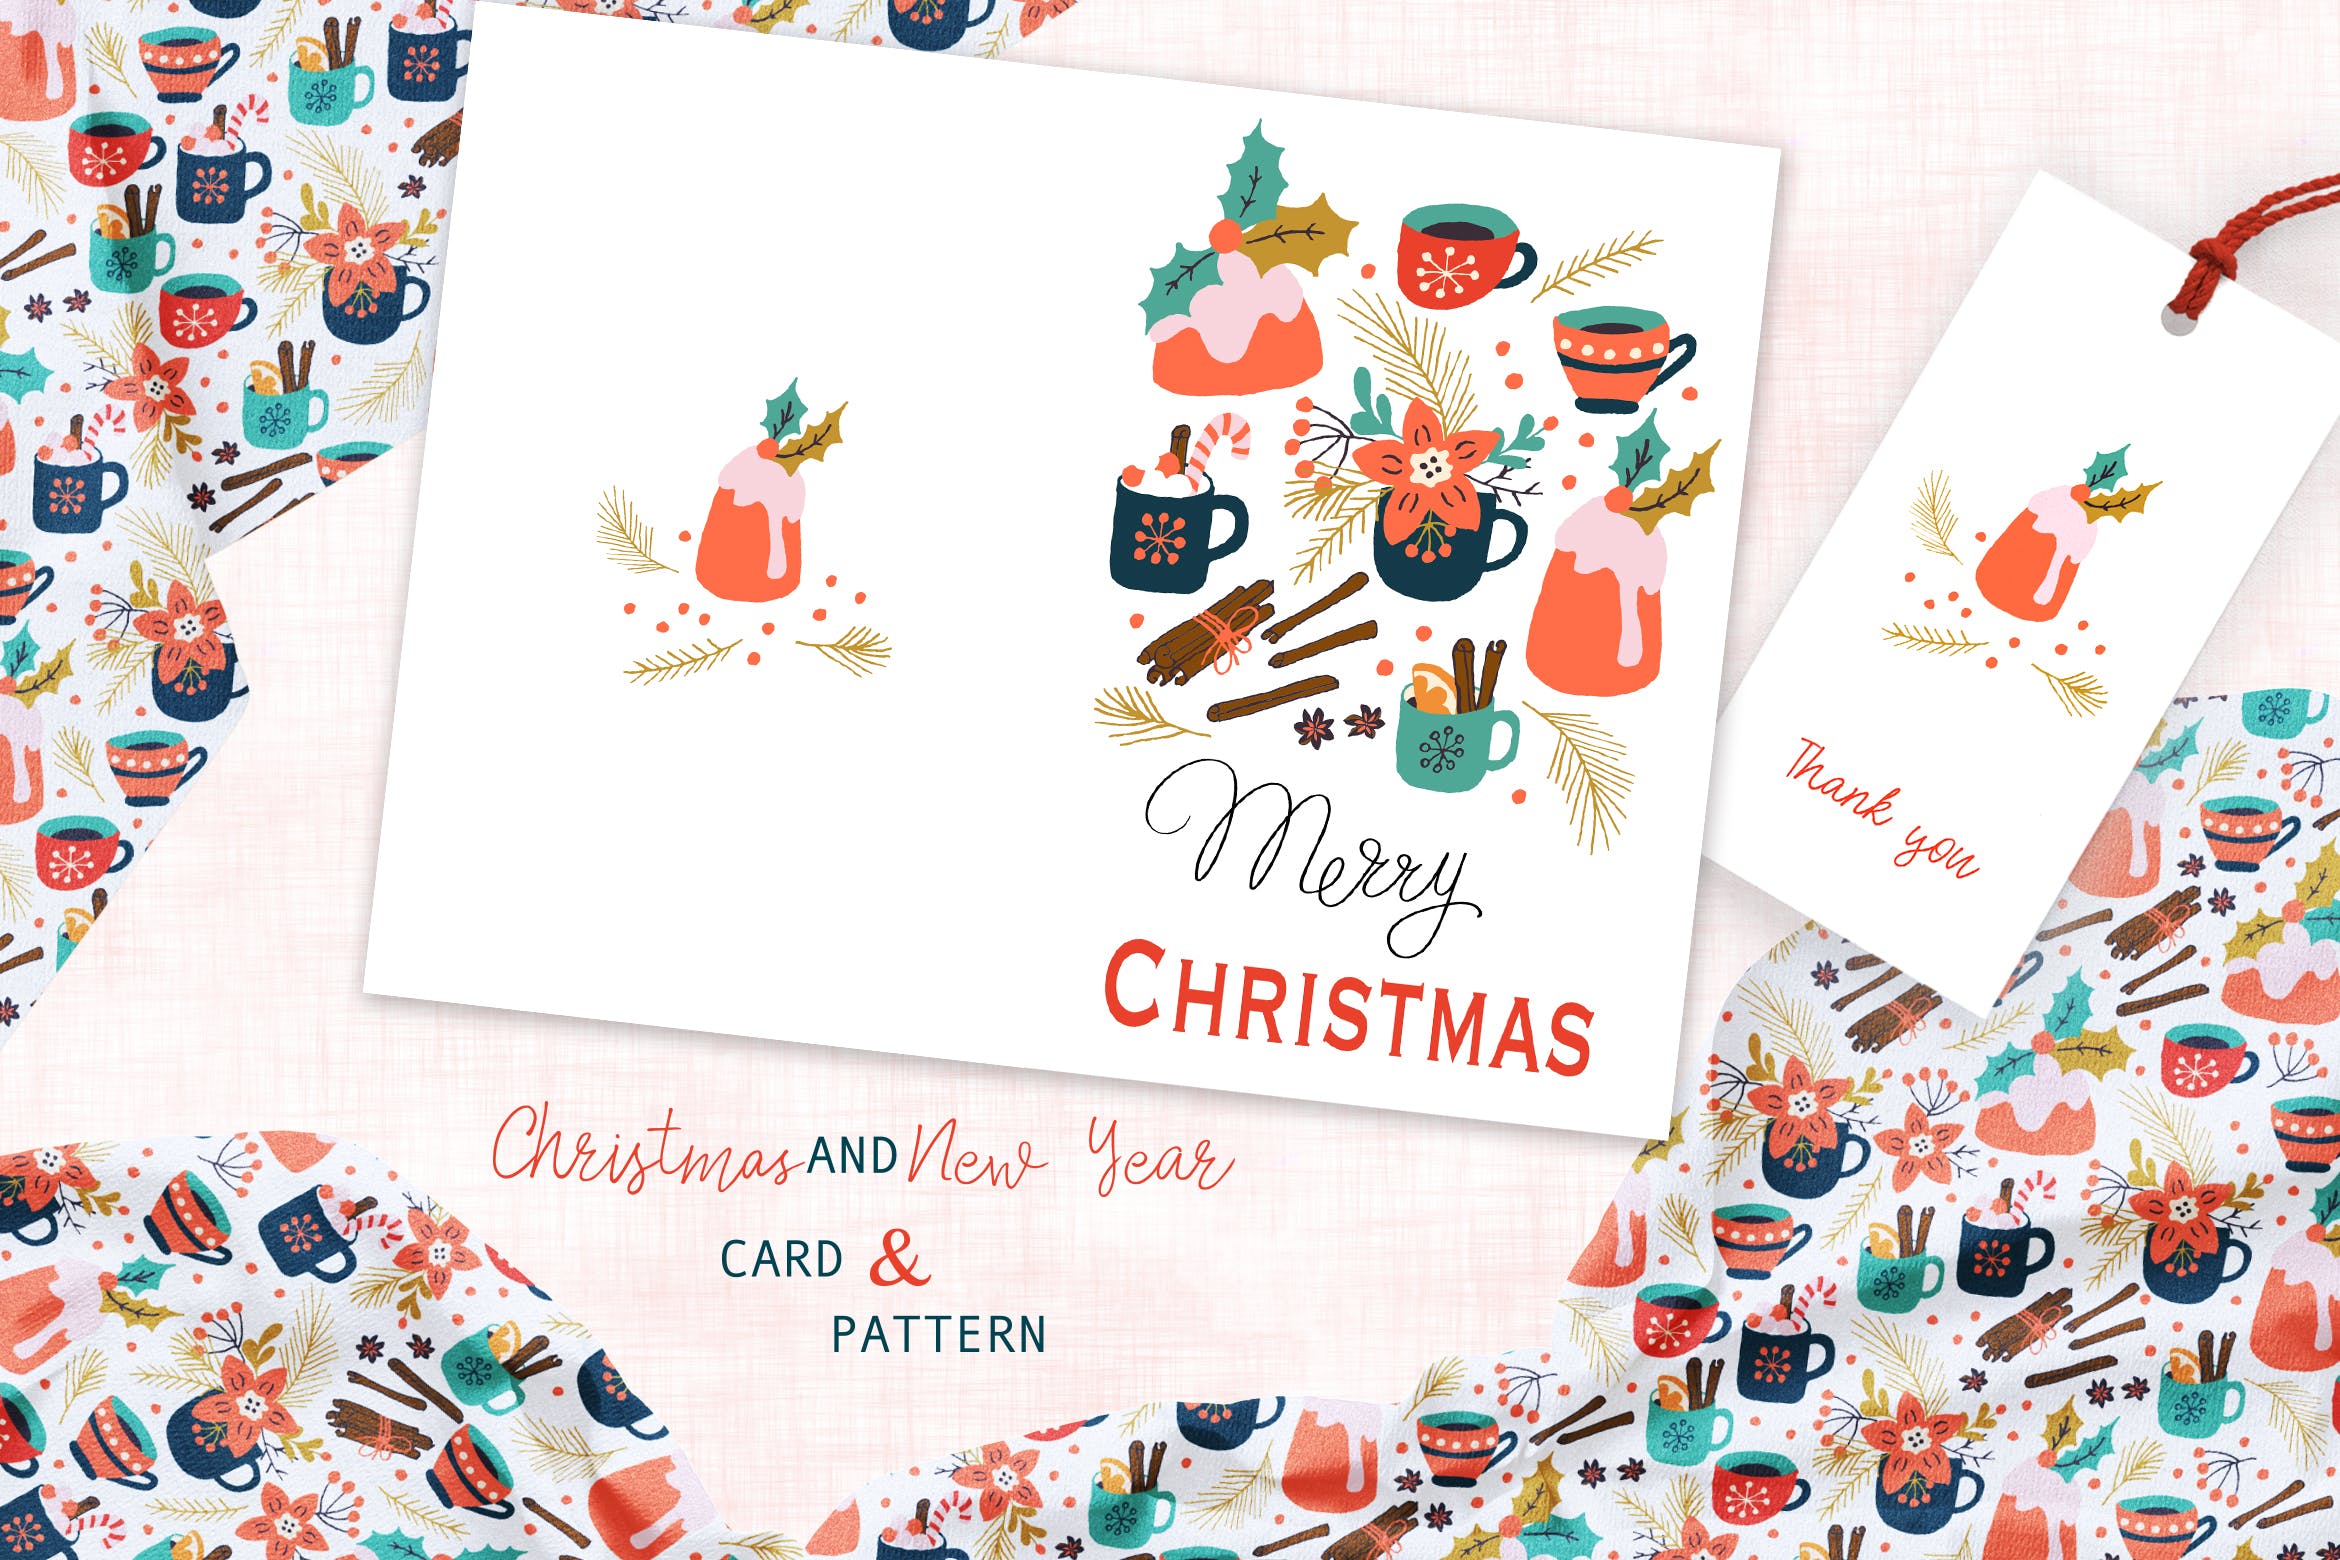 圣诞饮品手绘图案背景素材/贺卡设计模板 Spicy Christmas Greeting Card and Pattern插图